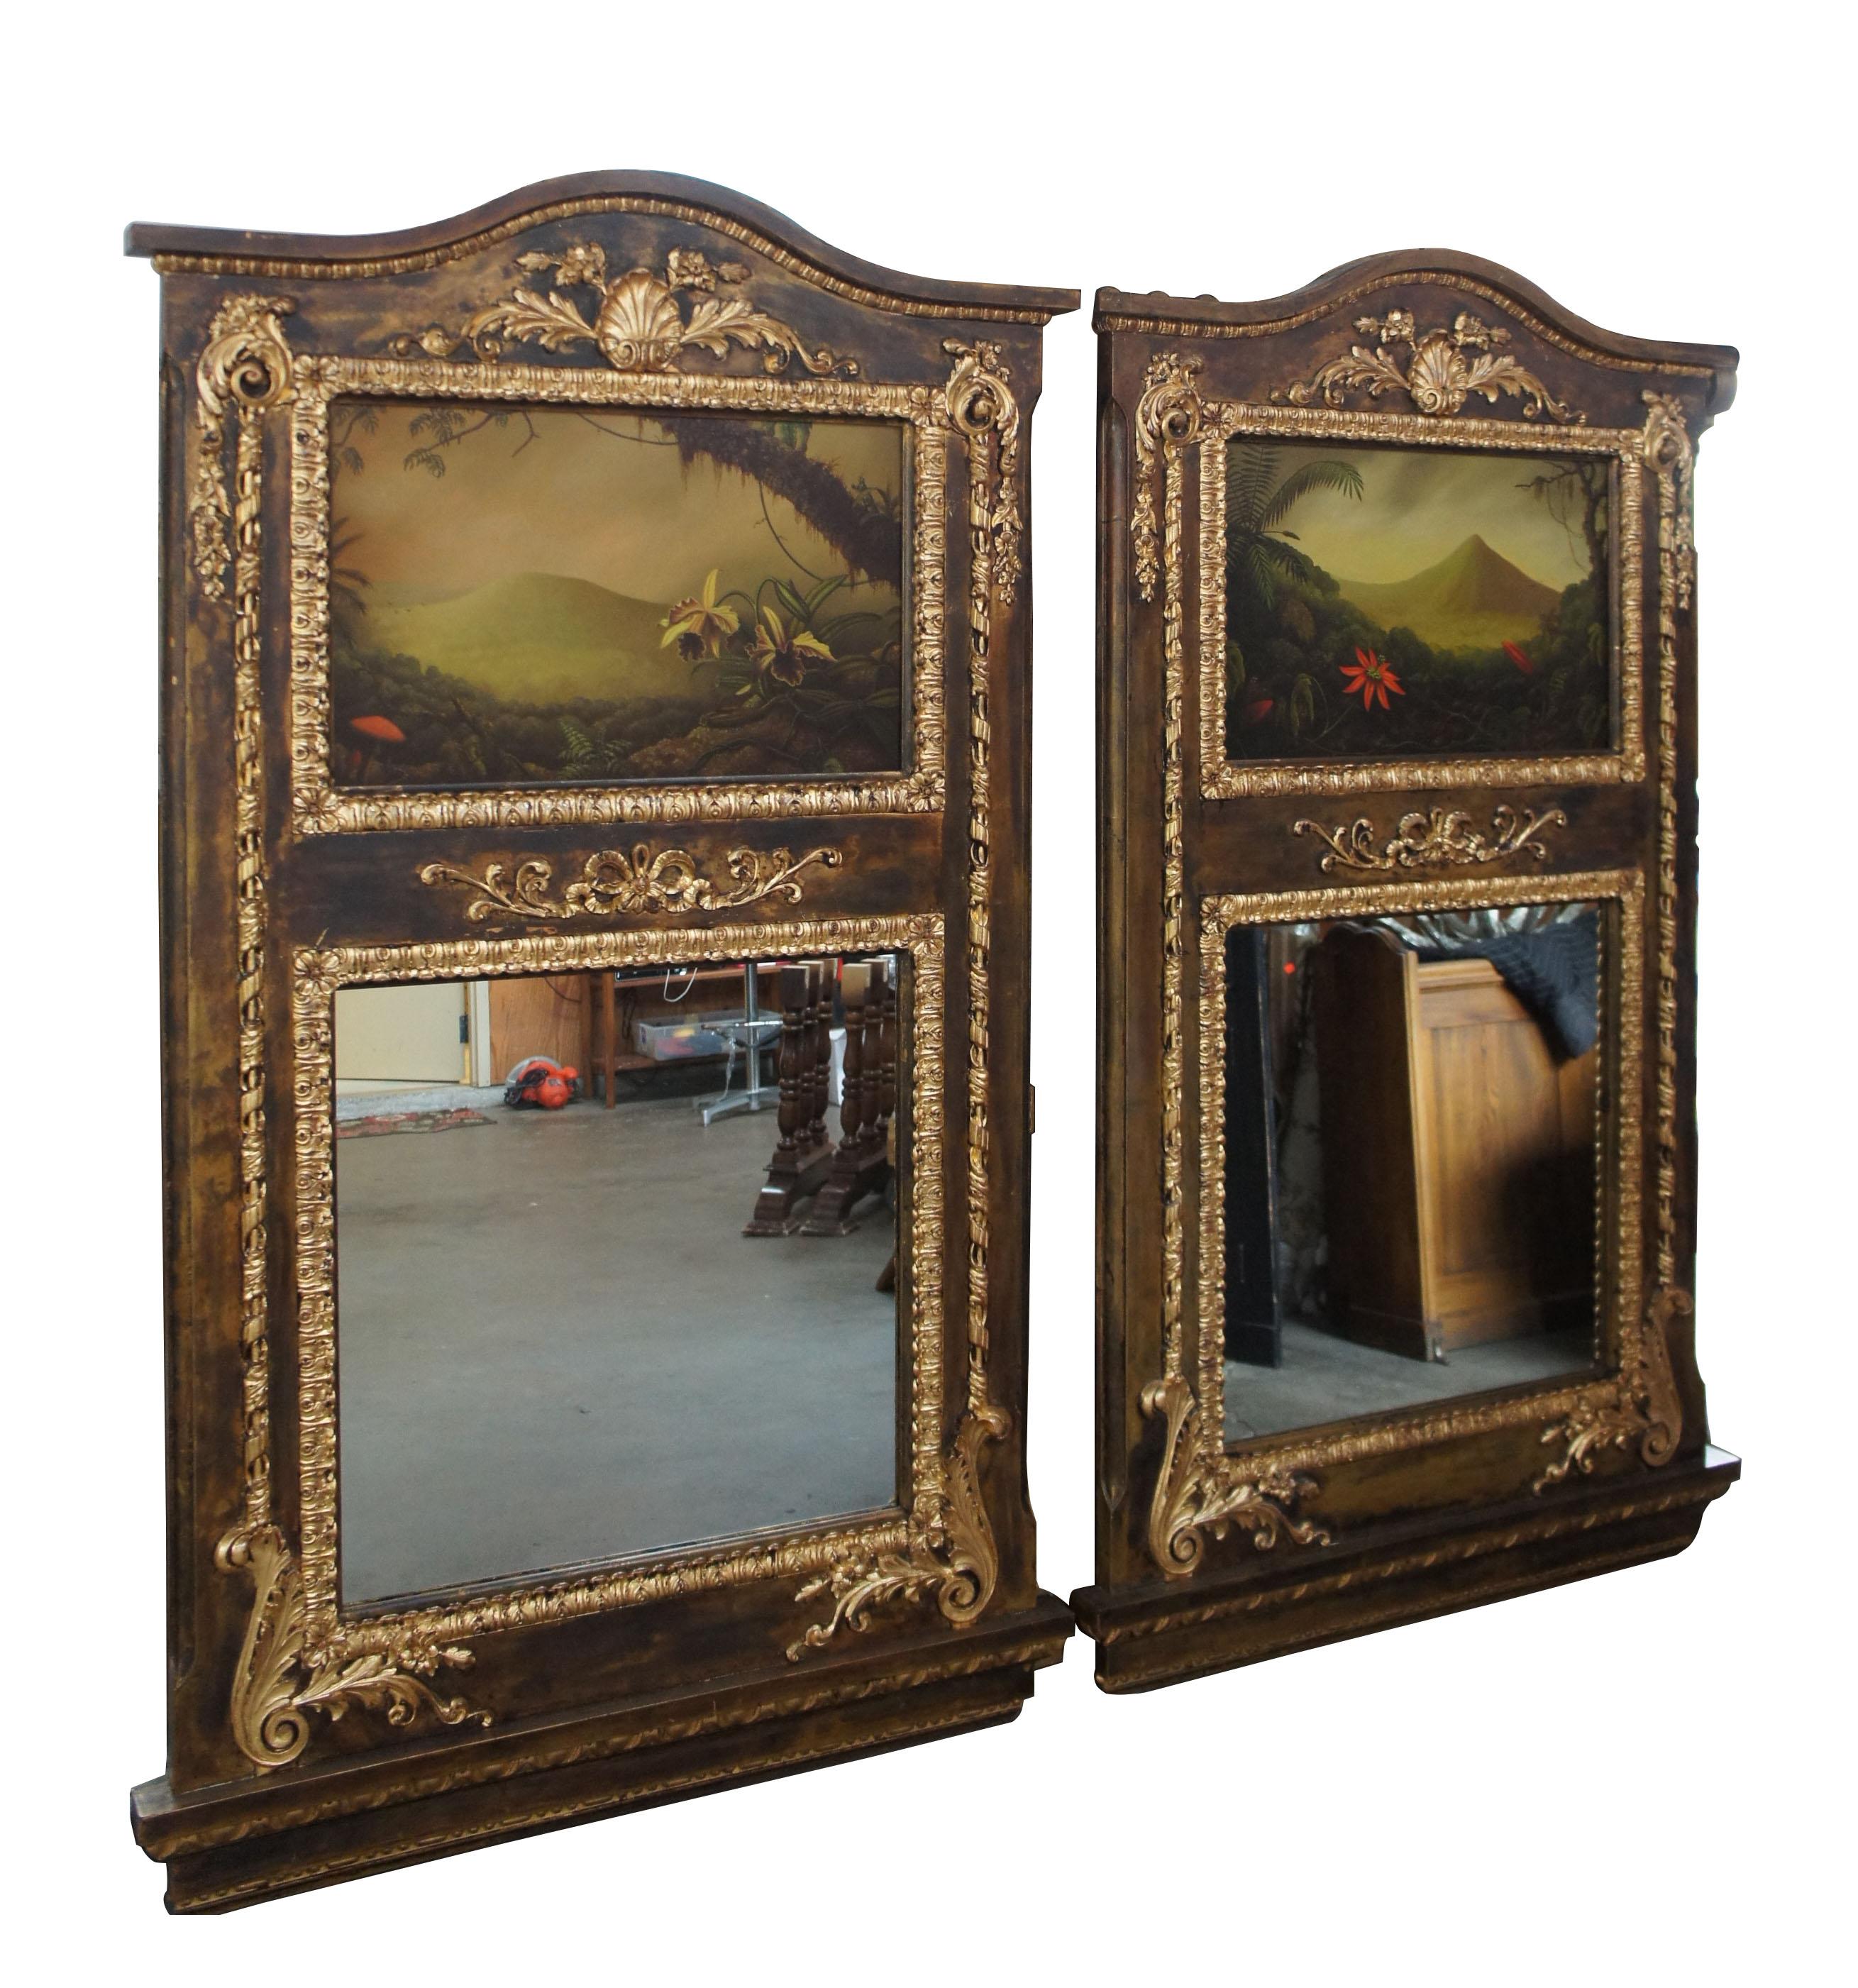 Miroirs muraux néoclassiques monumentaux avec peintures à l'huile originales de Peter Edlund

Une paire unique de miroirs muraux français d'inspiration néoclassique faits à la main. Méticuleusement détaillé avec une finition peinte à la main, des